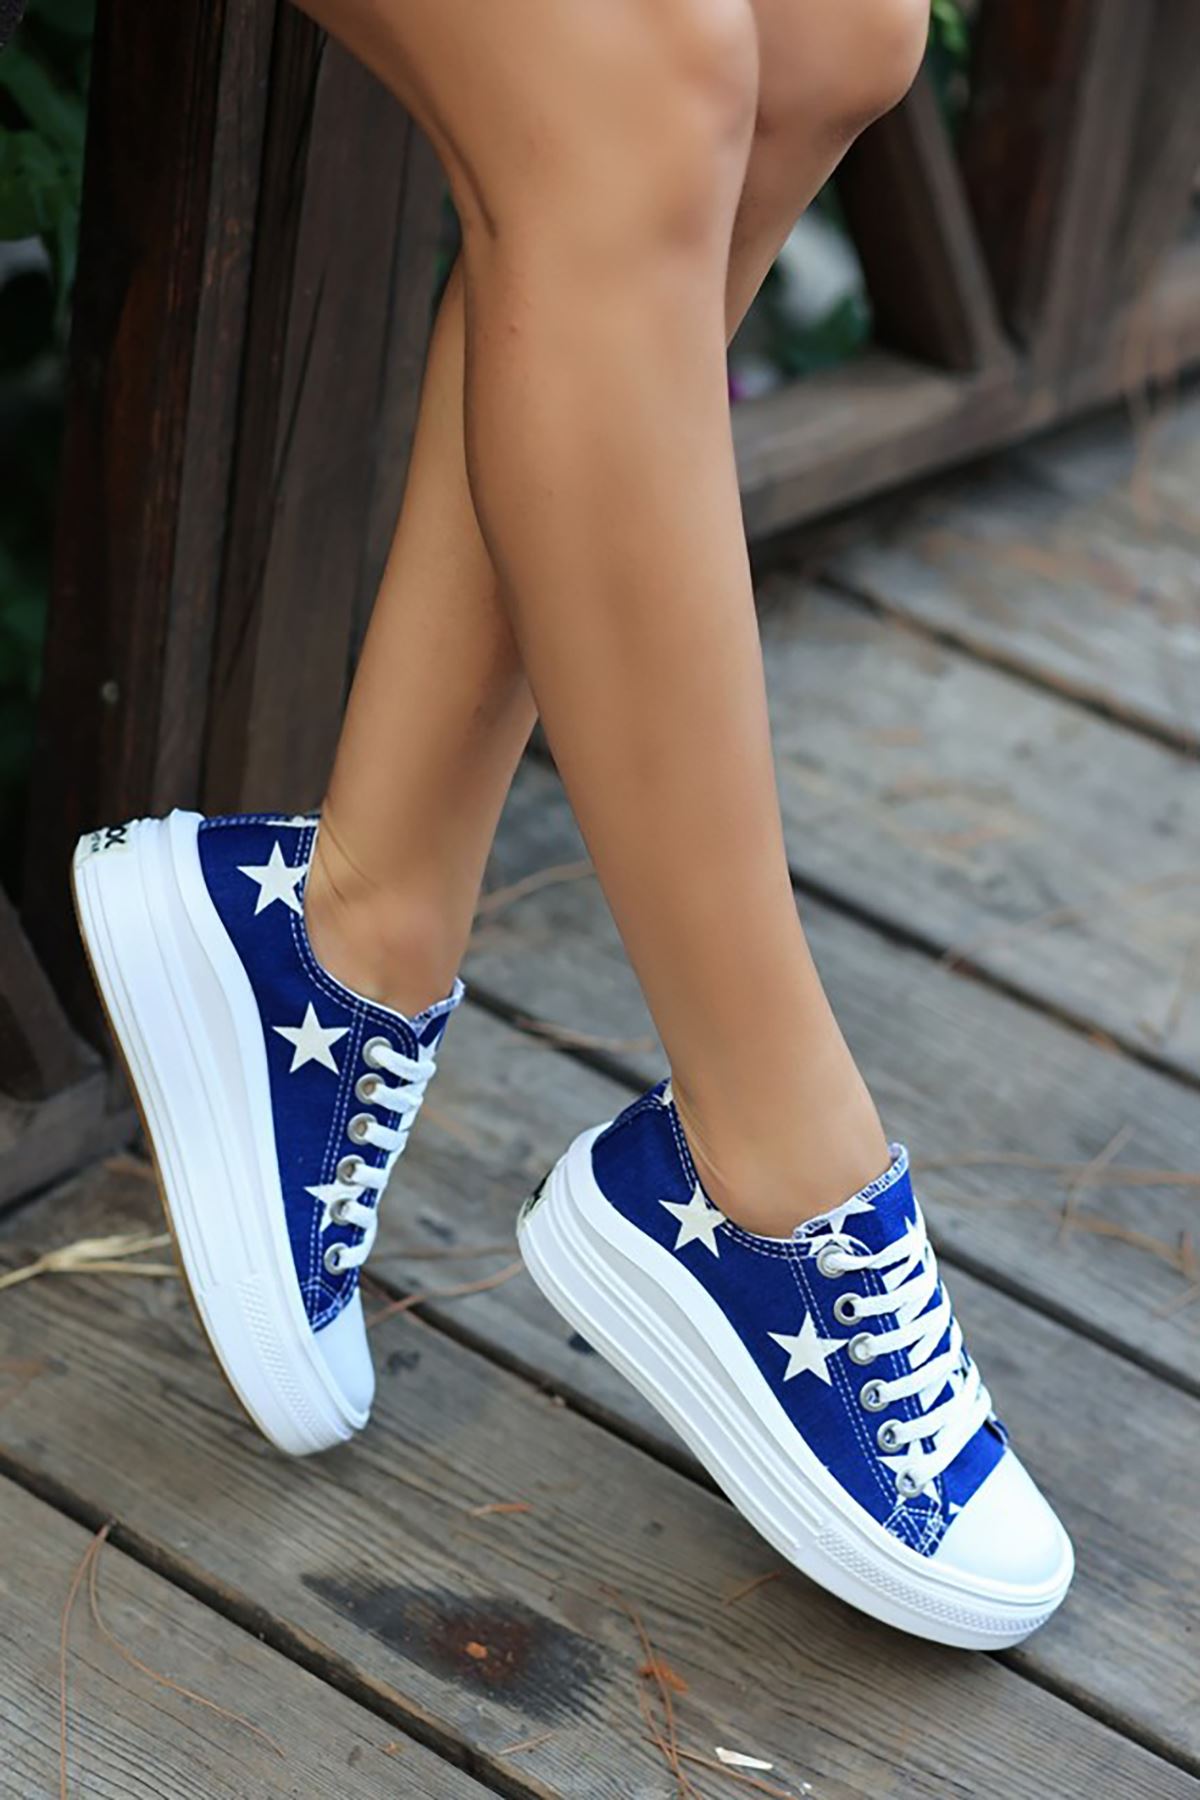 ERBRAUL Mavi Kot Yıldızlı Bayan Bağcıklı Spor Ayakkabı